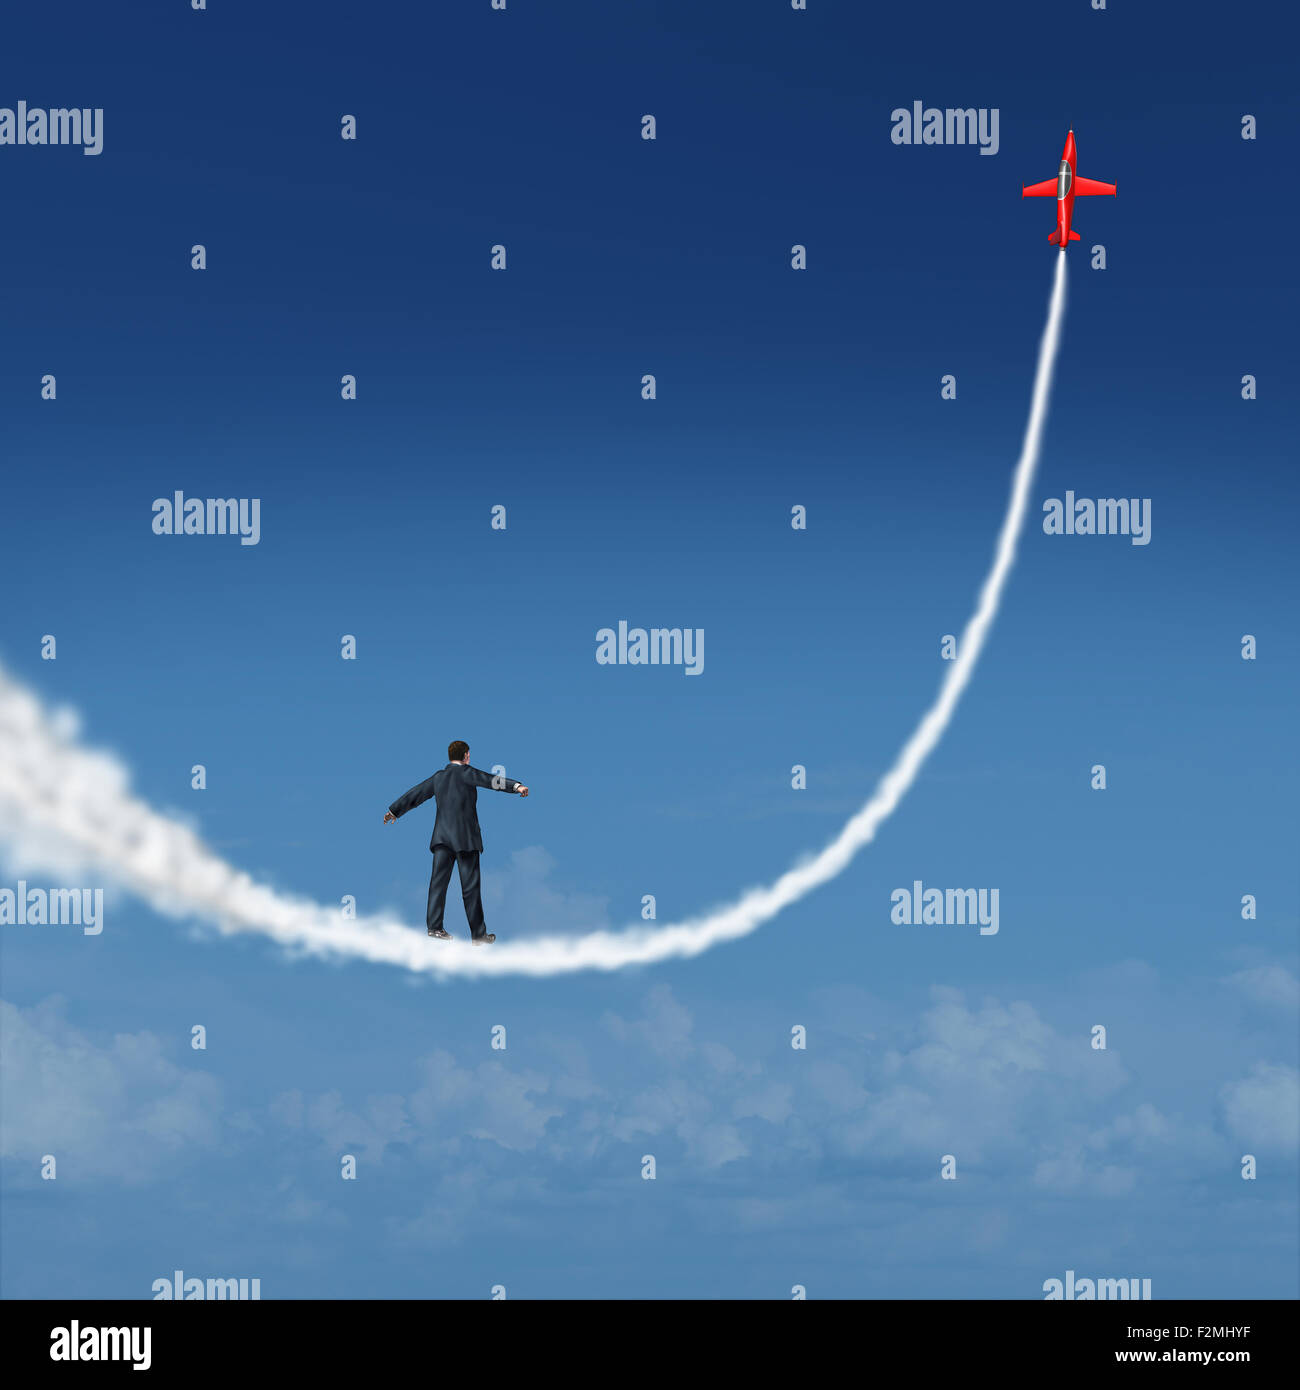 Verfolge deine Träume Konzept und Motivations-Symbol als Geschäftsmann zu Fuß nach oben auf eine Rauchfahne, erstellt von einem Jet-Flugzeug als Symbol zum Träumen und Streben nach Wachstumserfolg. Stockfoto